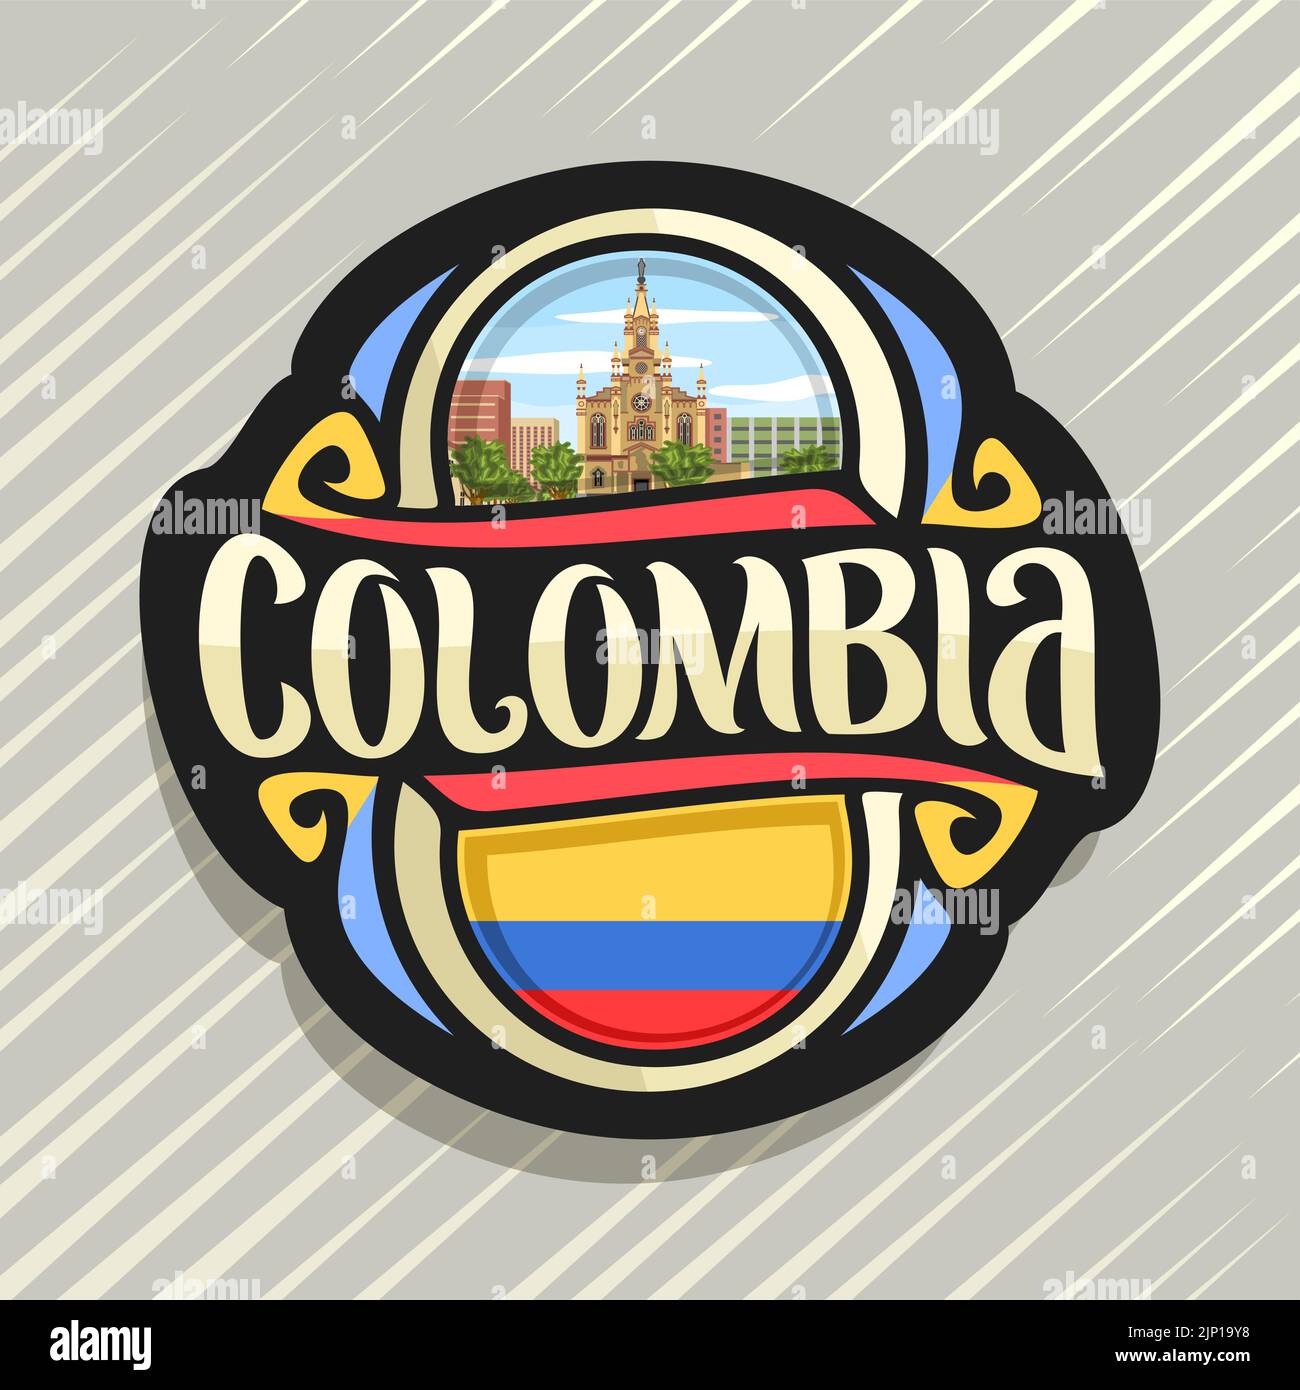 Logo Vector pour la Colombie, pays aimant frigo avec drapeau colombien, pinceau original typeface pour mot Colombie, Colombie - symbole national Naza Jésus Illustration de Vecteur